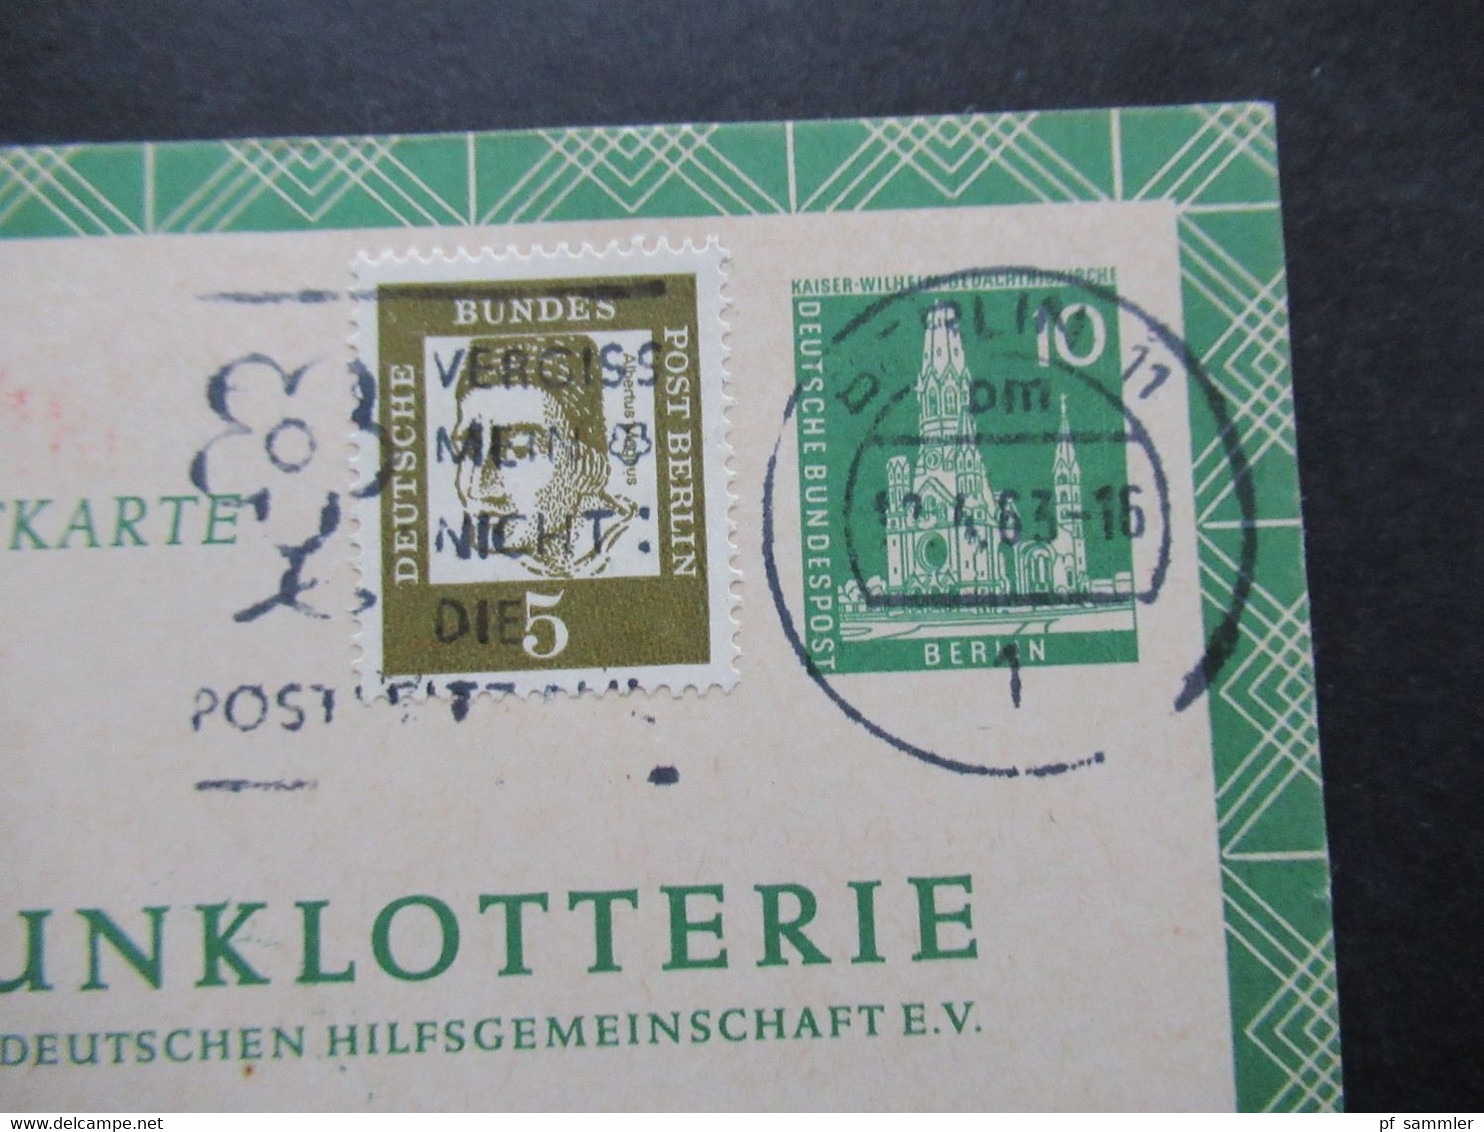 Berlin 1961 Funklotterie Postkarte FP 5 Mit Zusatzfrankatur Bedeutende Deutsche Sonderfrage Struwelpeter - Storia Postale